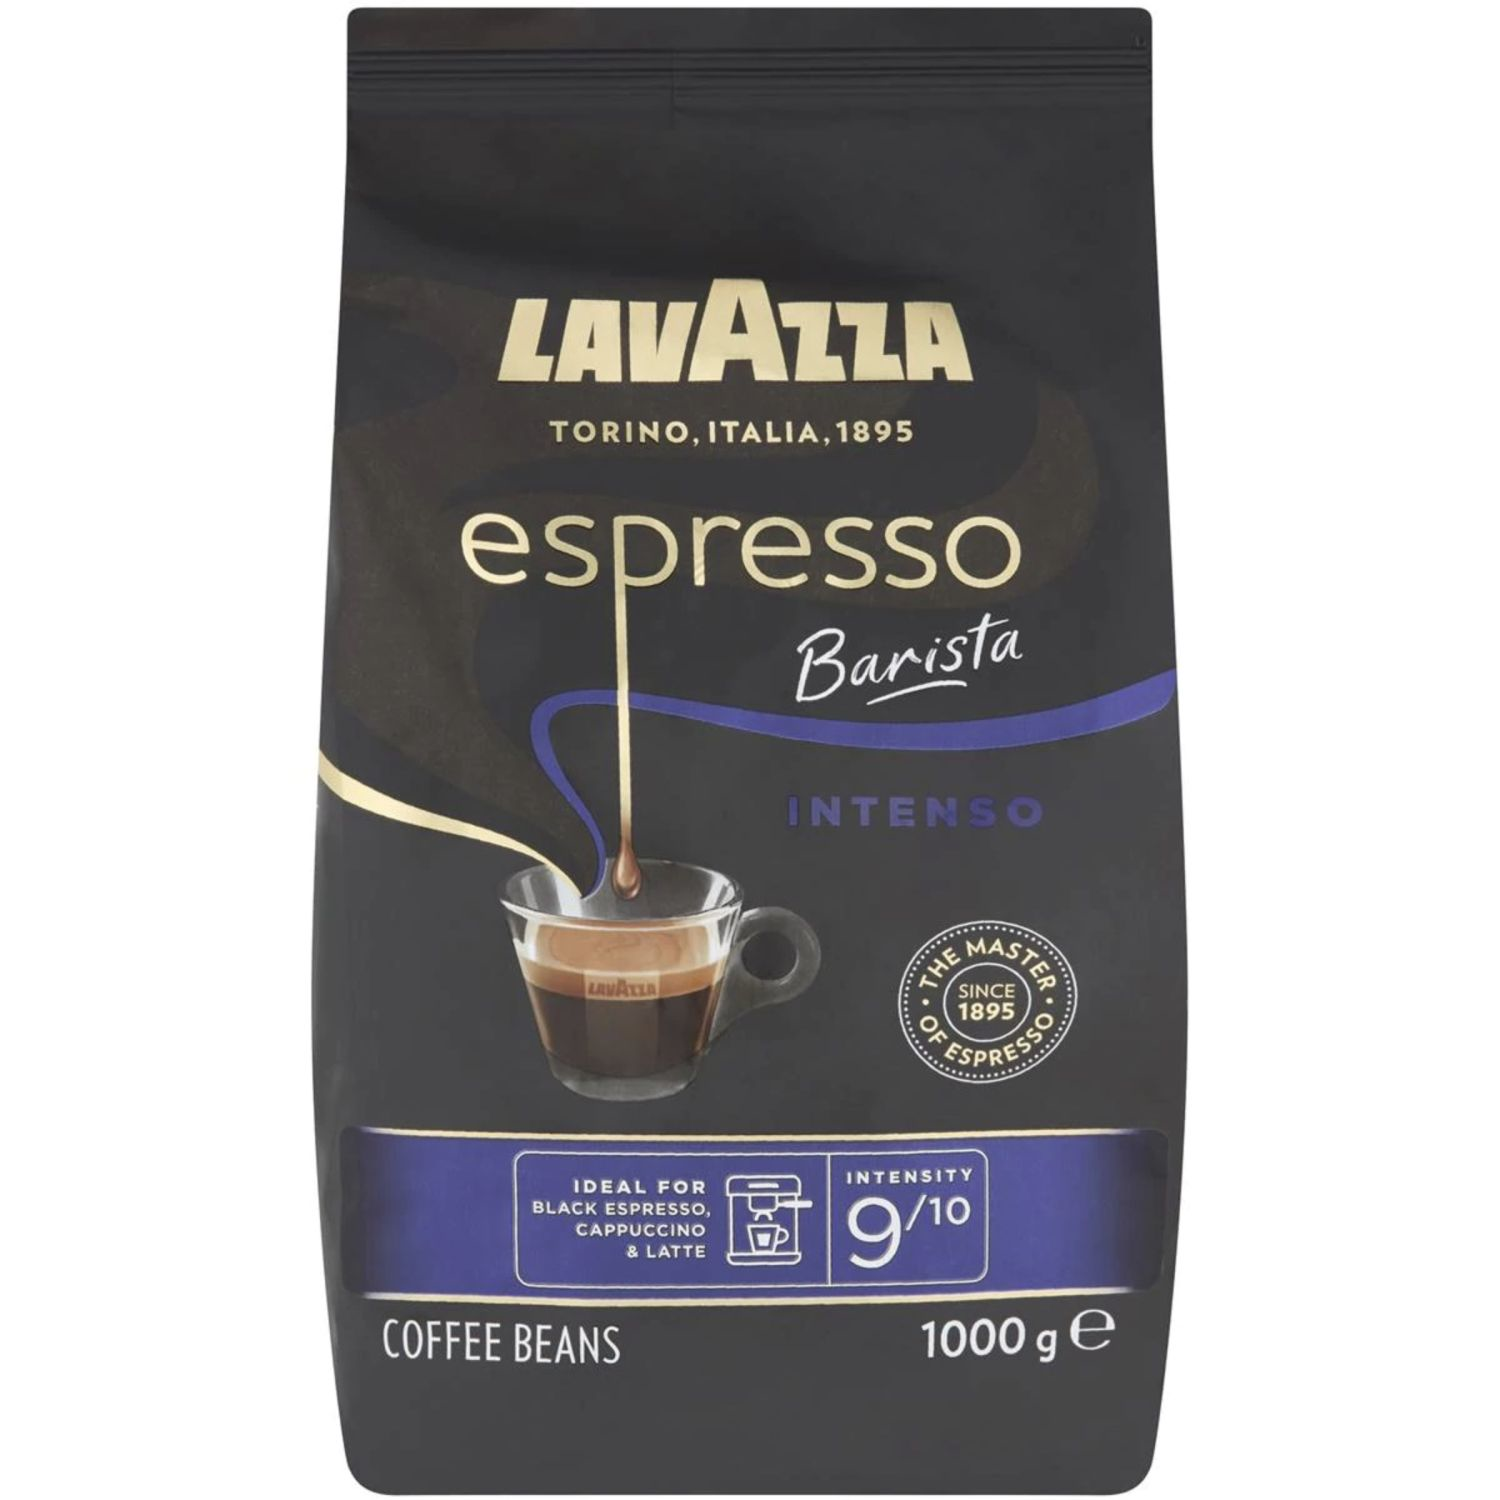 Lavazza Espresso Barista Intenso Coffee Beans, 1 Kilogram